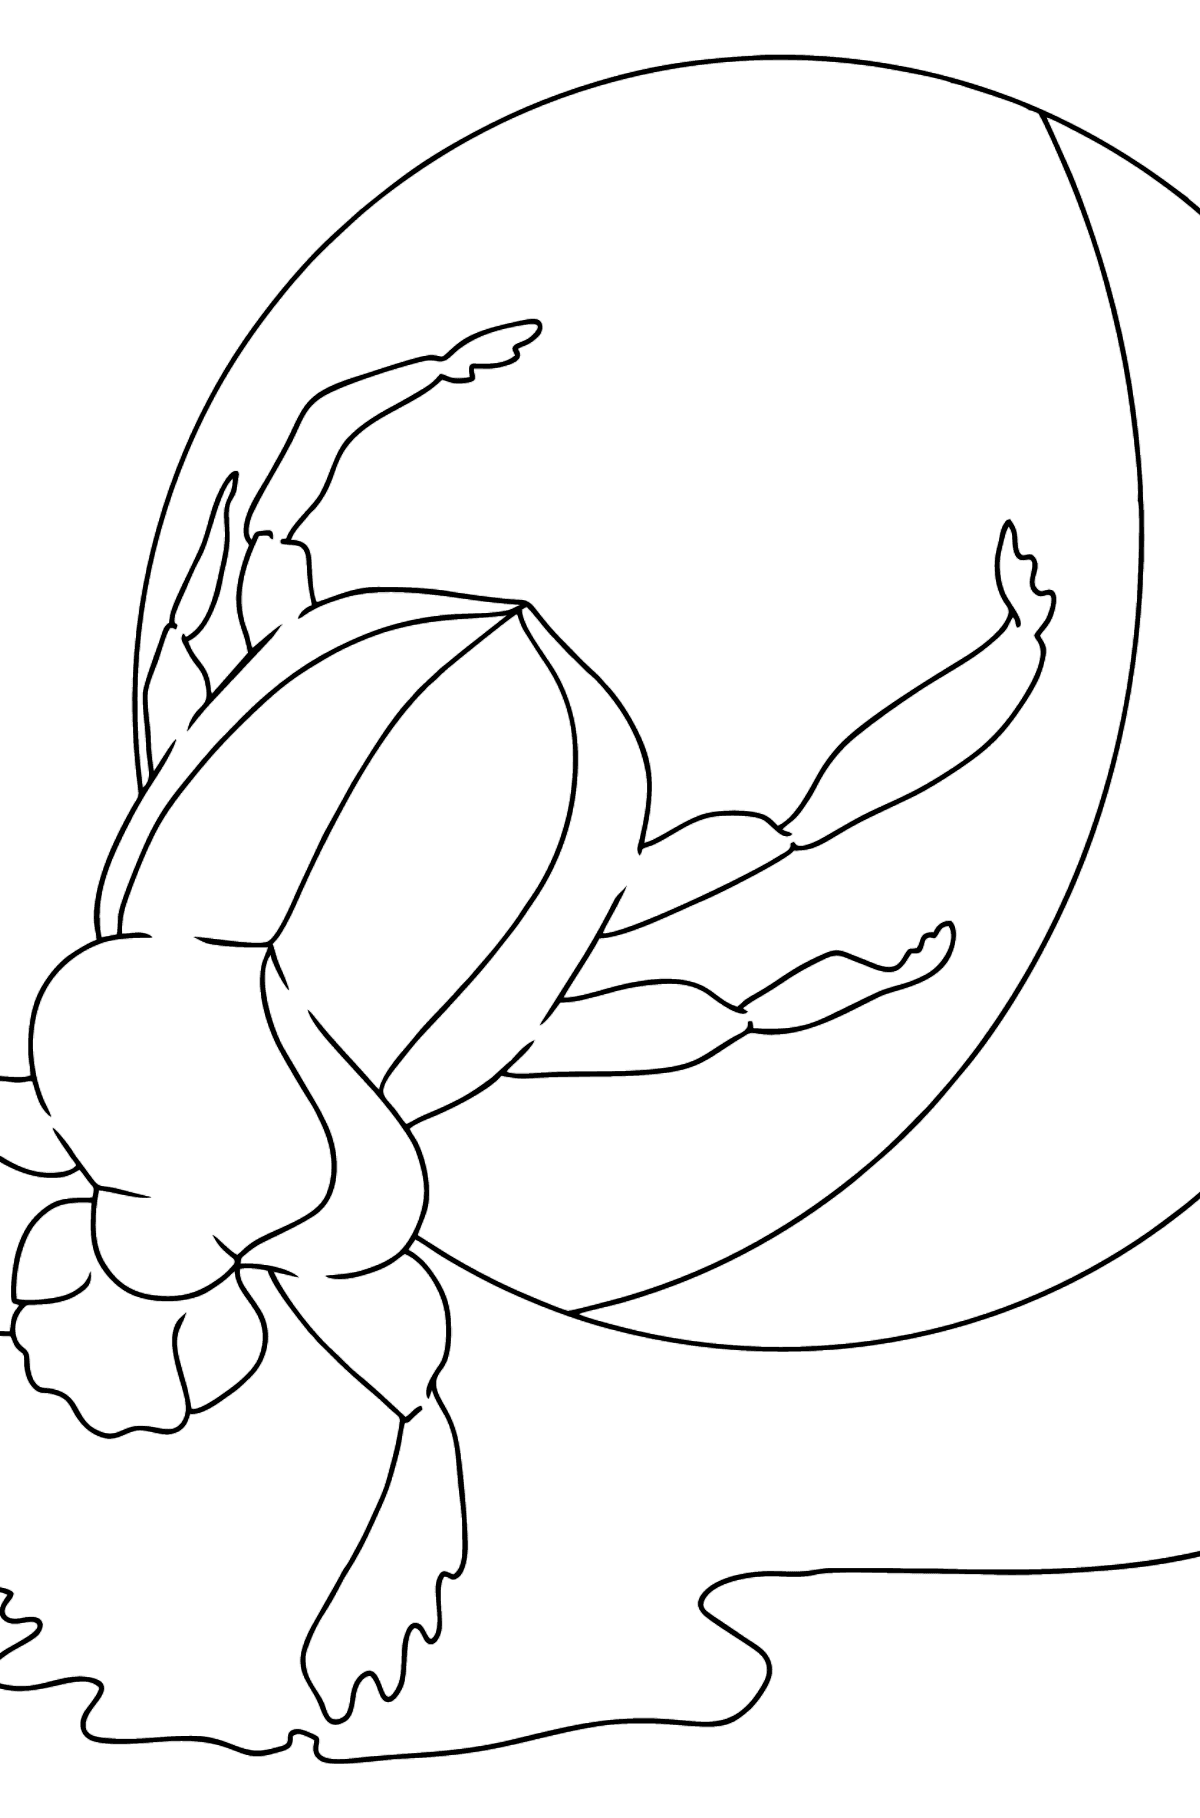 Desenho de escaravelhombolo para colorir (fácil) - Imagens para Colorir para Crianças